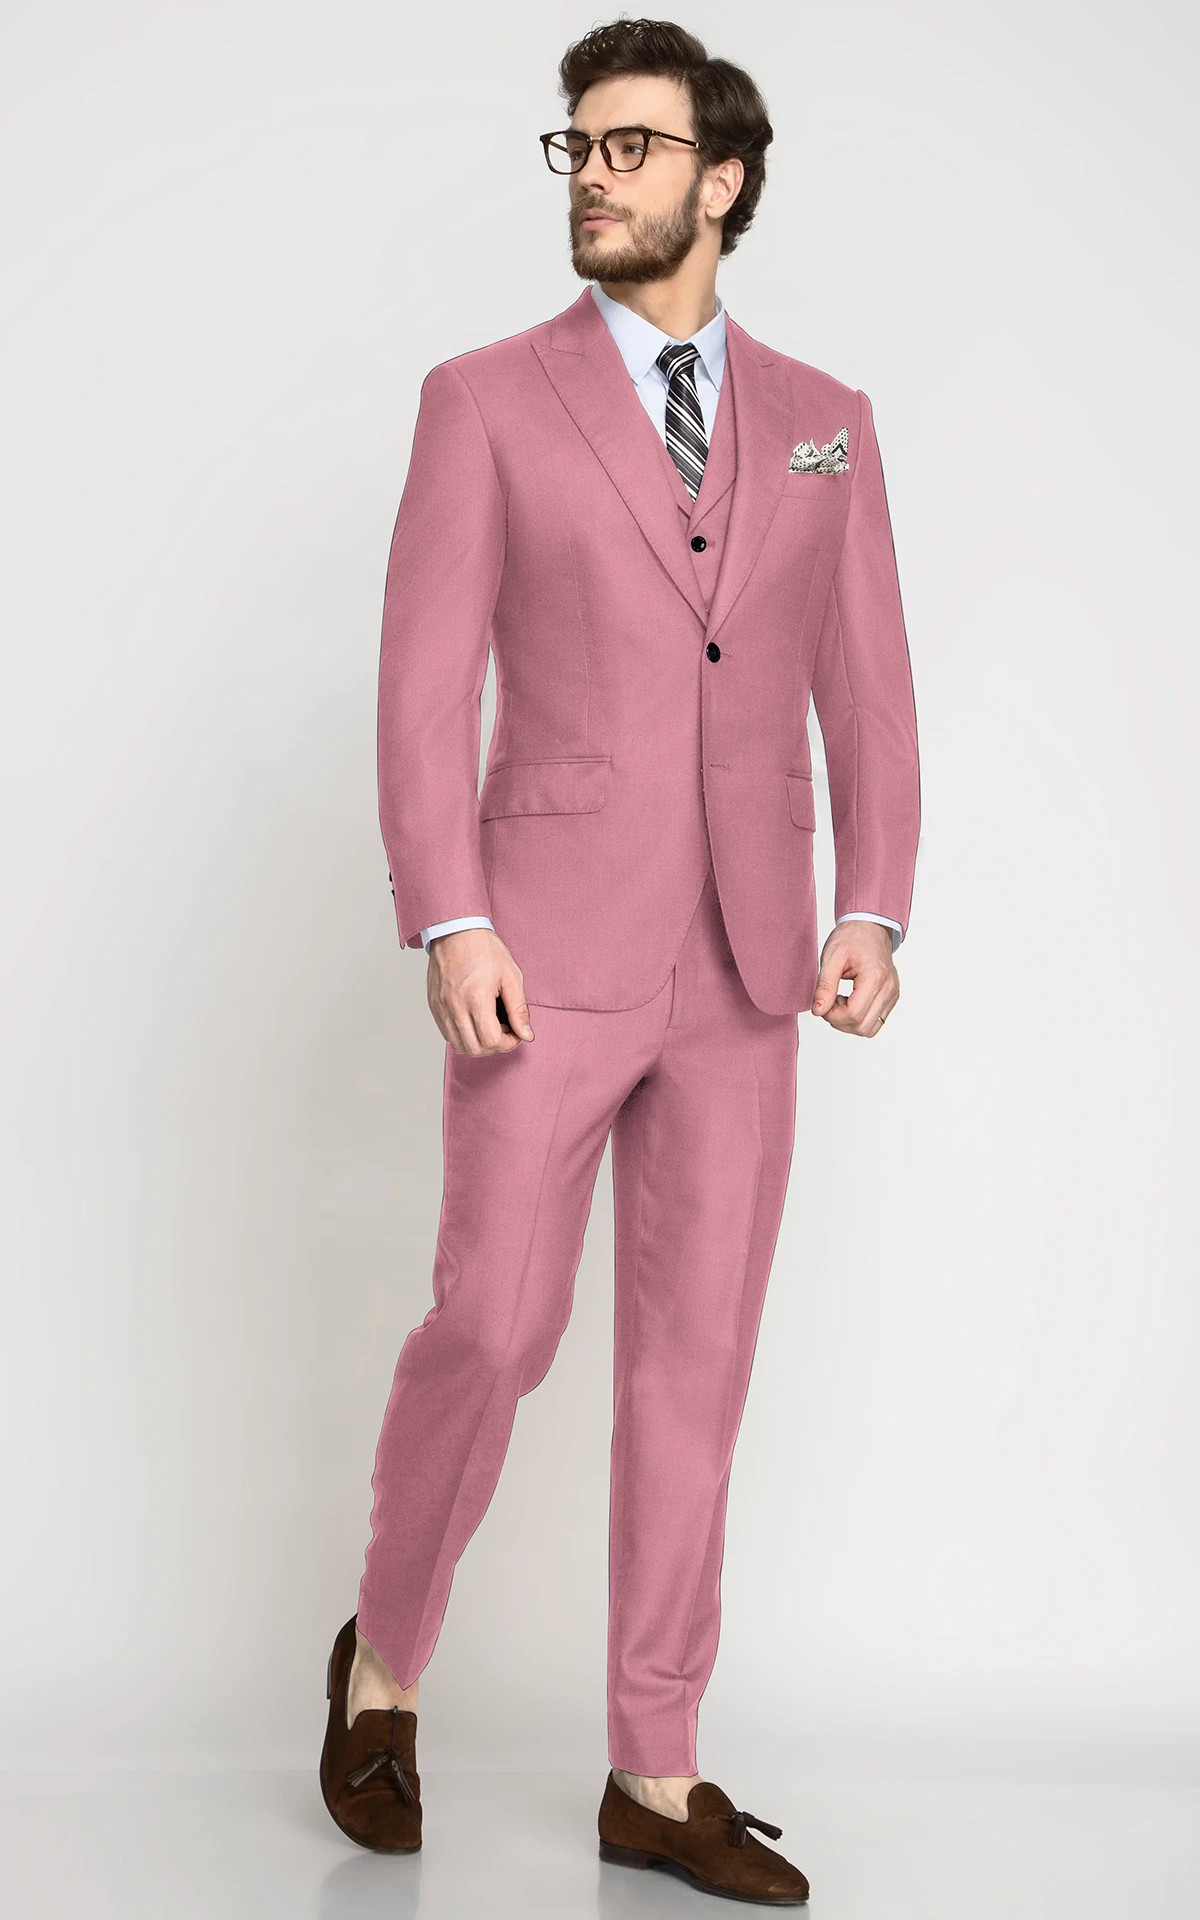 Portofino Charcoal Grey Suit